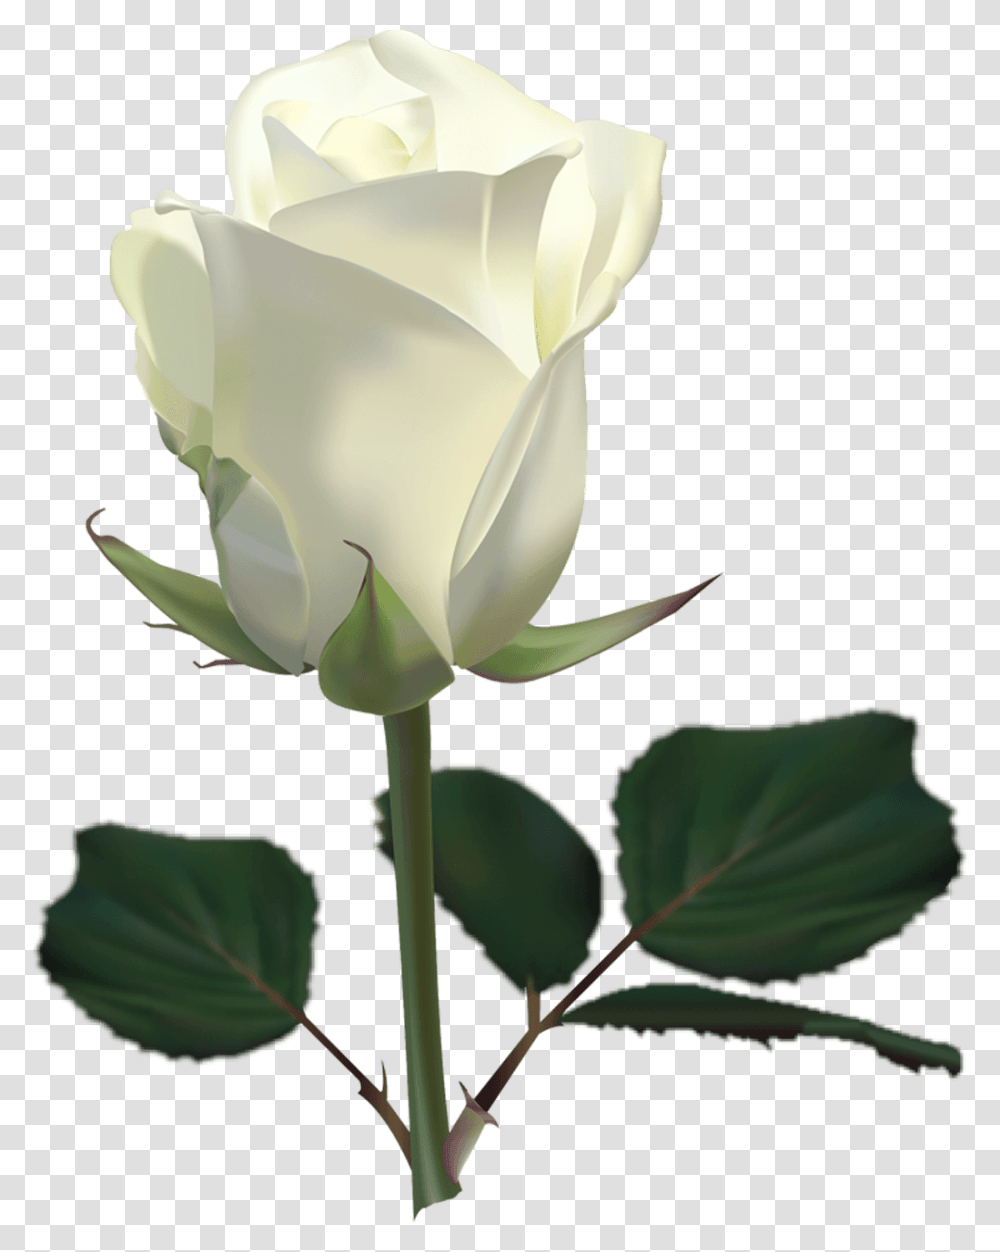 White Rose Image White Rose, Flower, Plant, Blossom Transparent Png